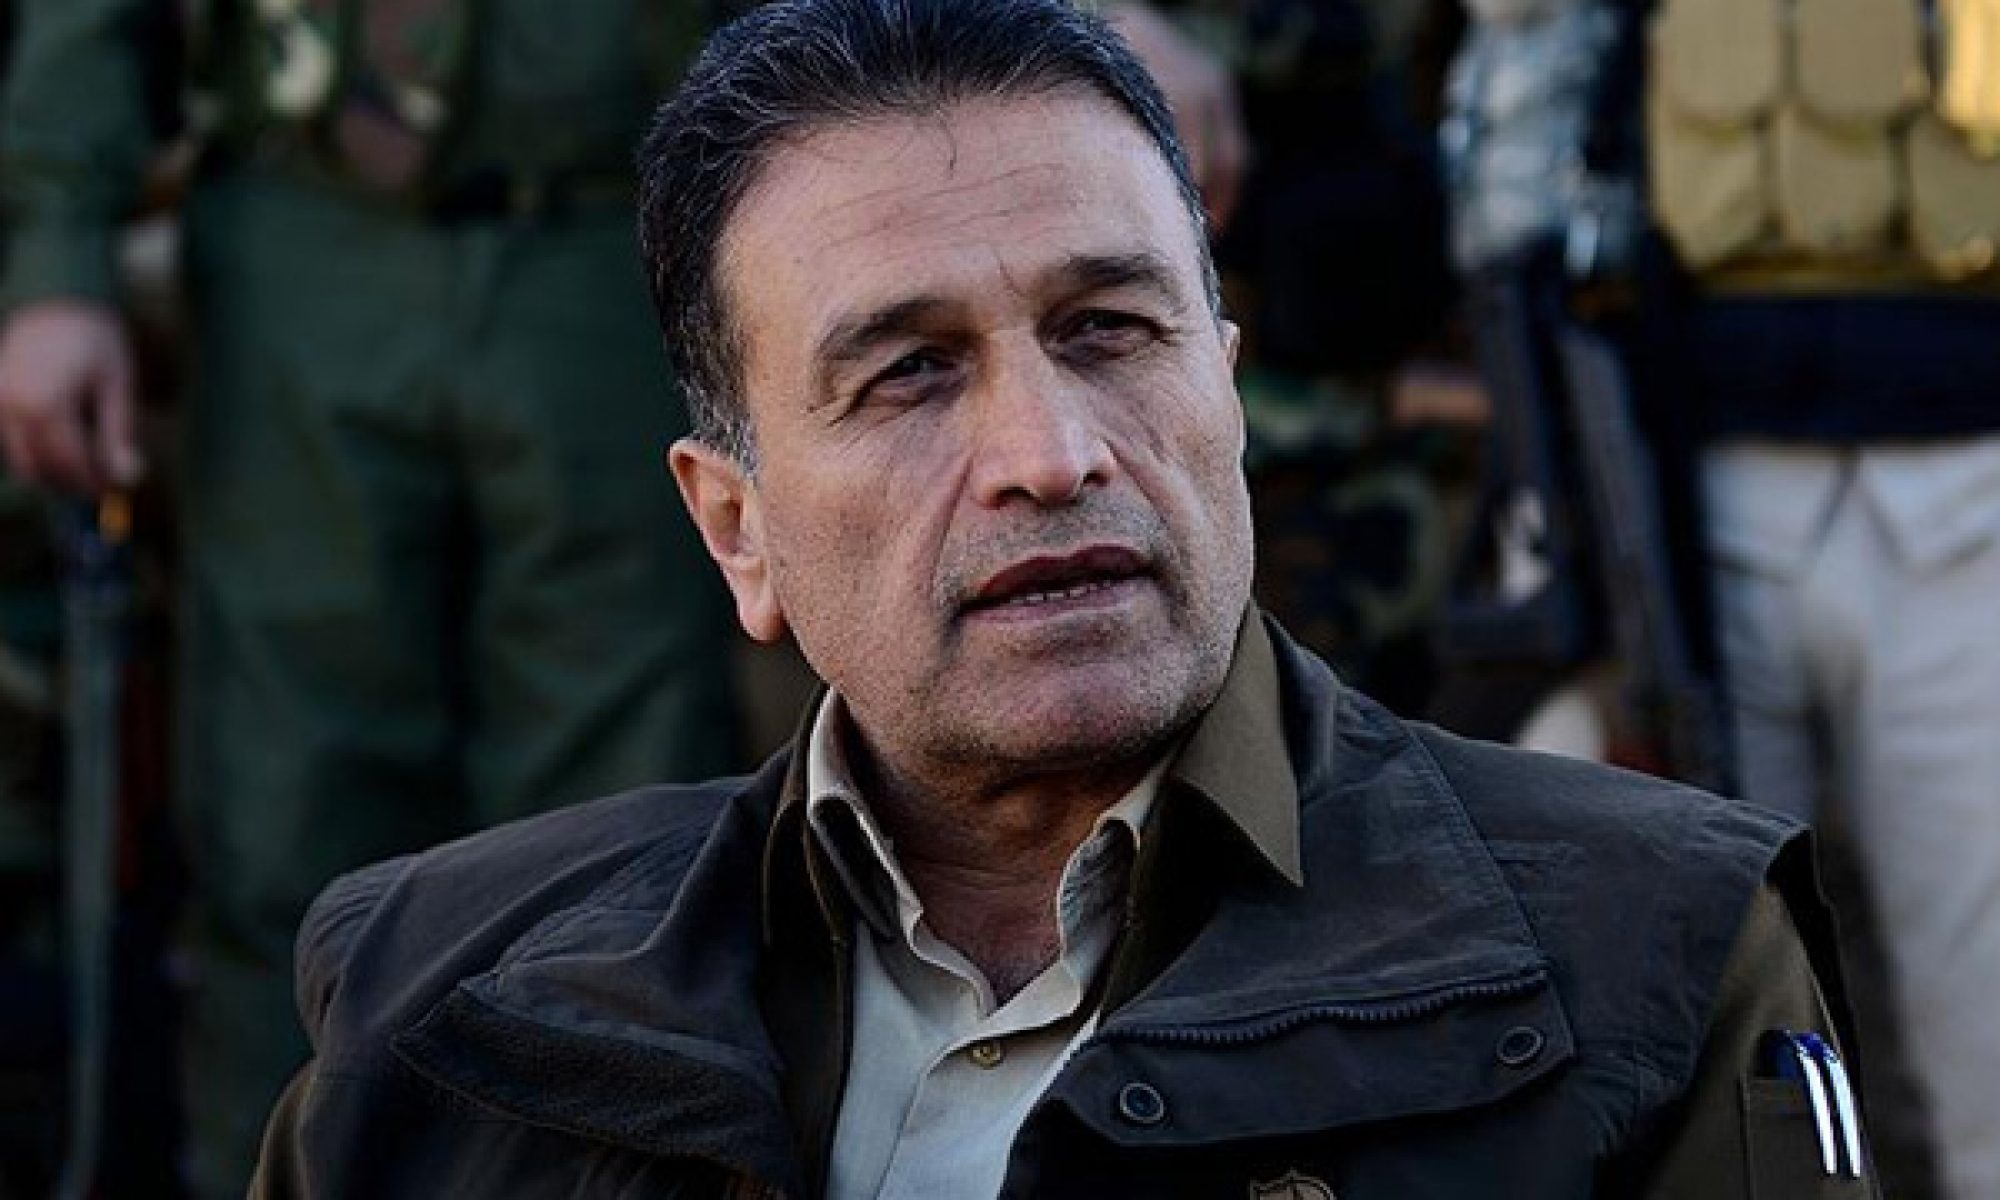 Lezgin: PKK içerisinde bir kanat Kürdistan Bölgesi’ne karşı düşmanlık yapıyor Erbil (Rûdaw) – Peşmerge Bakanı Yadımcısı Serbest Lezgin, Kürdistan petrol botu hattının patlatılmasına ilişkin, “PKK’nin Kürdistan Bölgesi’ne karşı böyle şeyler yapmasını essefle karşılıyoruz” dedi. Lezgin, “Savaş kapımıza dayanırsa buna mecbur kalırız” ifadelerini kullandı. Rûdaw TV’de yayınlanan “Rûdawî Emro” özel programına konuk olan Serbest Lezgin, PKK’nin Kürdistan’dan Türkiye’ye petrol pompalayan boru hattına hangi gerekçe ile sabotaj düzenlediklerini anlayamadıklarını söyledi. Lezgin, “PKK’nin Kürdistan Bölgesi’ne karşı böyle şeyler yapmasını essefle karşılıyoruz. Bu Kürdistan Bölgesi halkı ve hükümetine karşı açık bir düşmanlıktır. Kürdistan Bölgesi hükümeti bu petrolü satarak memur ve çalışanlarının maaşlarını ödüyor. Belliki bununla Kürdistan halkının ekmeğine de mani olmak istiyorlar. Hükümet zayıf kalsın, halka maaş ödeyemesin istiyorlar. Serzêr Asayiş Müdürü’nün şehit edilmesi, Kürdistan petrol boru hattının patlatılması düşmanca eylemlerdir ve tehlikelidir” dedi. “PKK’nin yaptığı gün gibi ortada” Yapmamış olsaydı PKK’nin Serzer Asayiş Müdürü’nün katledilmesini anında inkar etmesi gerektiğini vurgulayan Lezgin, “Erbil Asayiş Müdürlüğü bu konuda açıklama yaptı. PKK yapmamış olsa hemen bu açıklamaya yanıt vermeliydi. Ama olayın üzerinden 15 gün geçtikten sonra inkar etti. Oysa kendilerinin yaptığı gün gibi ortada” şeklinde konuştu. Kürdistan petrol boru hattına düzenlenen sabotaja değinen Peşmerge Bakanı Yadımcısı Serbest Lezgin, “PKK içerisinde bir kol açıkça Kürdistan Bölgesi’ne karşı büyük bir düşmanlık yapıyor. Bu süreçte bunu neden yaptıklarını anlayamıyoruz. Amaçları ortalığı karıştırmaktır, arkasında siyasi amaçlar vardır. Kürdistan Bölgesi’nin ekonomisini çökertmek istiyorlar” değerlendirmesinde bulundu. “Savaş kapımıza dayanırsa mecbur kalırız” Petrol boru hattının patlatıldığı bölgeye PKK’lilerin kolayca ulaşamadığını ifade eden Lezgin, “Gündüz ortasında PKK’lilerin kendi silahlı güçleri ile ulaşamaycağı bir bölgede petrol boru hattı patlatılmıştır. Kürdistan hükümeti bunu araştırıyor. Belli ki onlara yardım eden başka eller bunu yapmış. PKK bunun planını yapmıştır, başkalarına yaptırmıştır. Bununla Kürdistan Bölgesi’nin deneyimini yıkmak istiyorlar, ortadan kaldırmak istiyorar” dedi. Serbest Lezgin, savaş istemediklerini, savaşın Kürdistan’a yıkım getirdiğini vurgulayarak, “Savaş istemiyoruz, durumumuz buna el vermiyor. Savaş Kürdistan’a sadece yıkım getirir. PKK’den talebimiz savaşçılarını Kürdistan Bölgesi’nden çıkarmaları ve siyaset yolunu tercih etmeleridir. Ancak savaş kapımıza dayandığında buna mecbur kalırız” ifadelerini kullandı. PKK’nin başta Kandil, Süleymaniye ve Behdinan bölgelerine konuşlandığını ifade eden Lezgin, szölerine şunları ekledi: “PKK’nin buralarda yerleşerek yaptığı şey Kürdistan halkına düşmanlıktır. PKK tüm Kürdistan halkına ve Kürt partilerine düşmandır ama en çok da Kürdistan Demokrat Partisi’ne karşı bunu yapıyorlar. Biz 1991’den beri kendi sorunlarını gidip kendi bölgelerinde çözmelerini söylüyoruz.” PKK Yürütme Komitesi Üyesi Murat Karayılan’ın Behdinan’a bağlı bazı bölgelere Peşmerge gönderilmesine ilişkin “KDP savaş hazırlığı yapıyor” şeklindeki iddialarına da değinen Lezgin, sözkonusu bölgelerde Peşmerge güçlerinin periyodik olarak görev değişikliğine gittiğini ve bu iddiaların yersiz olduğunu söyledi. Lezgin, “Elbette yerleşim bölgelerine de Peşmerge gönderilmiştir ki biz bu yerlere ve halka zarar gelmemesi için PKK’nin buralardan uzaklaşmasını istiyoruz” şeklinde konuştu. “PKK Şengal Anlaşmasının hayata geçirilmesi önünde engeldir” Şengal’in yeniden inşa edilerek güvenliğinin sağlanması konusunda Erbil ile Bağdat arasında varılan anlaşmayı değerlendiren Peşmerge Komutanı Lezgin, “Şengal anlaşması uluslararası gözlem altında yapılan bir anlaşmadır. Ancak malesef PKK’ye bağlı grupların varlığı anlaşmanın hayata geçirilmesi önündeki en büyük engellerdir. Çünkü PKK Şengal’de kalıcı olmak ve yerini sağlamlaştırmak istiyor” dedi. Şengal Anlaşmasının detaylarına değinen Serbest Lezgin, önümüzdeki süreçte anlaşmanın hayata geçirilmesi için komisyonların görevlendirileceğini ve adım adım çalışma yapılacağını söyledi. “ABD’nin Kürdistan’a dair uzun soluklu planları var” Peşmerge Bakanlığı ile ABD’nin başını çektiği uluslararası koalisyon arasında koordinasynun sürdüğünü belirten Lezgin, “ABD’nin de Kürdistan Bölgesi ile iki yıllık bir planı var. Önümüzdeki süreçte iki Peşmerge tugayı daha silahlandırılacak” diye konuştu.